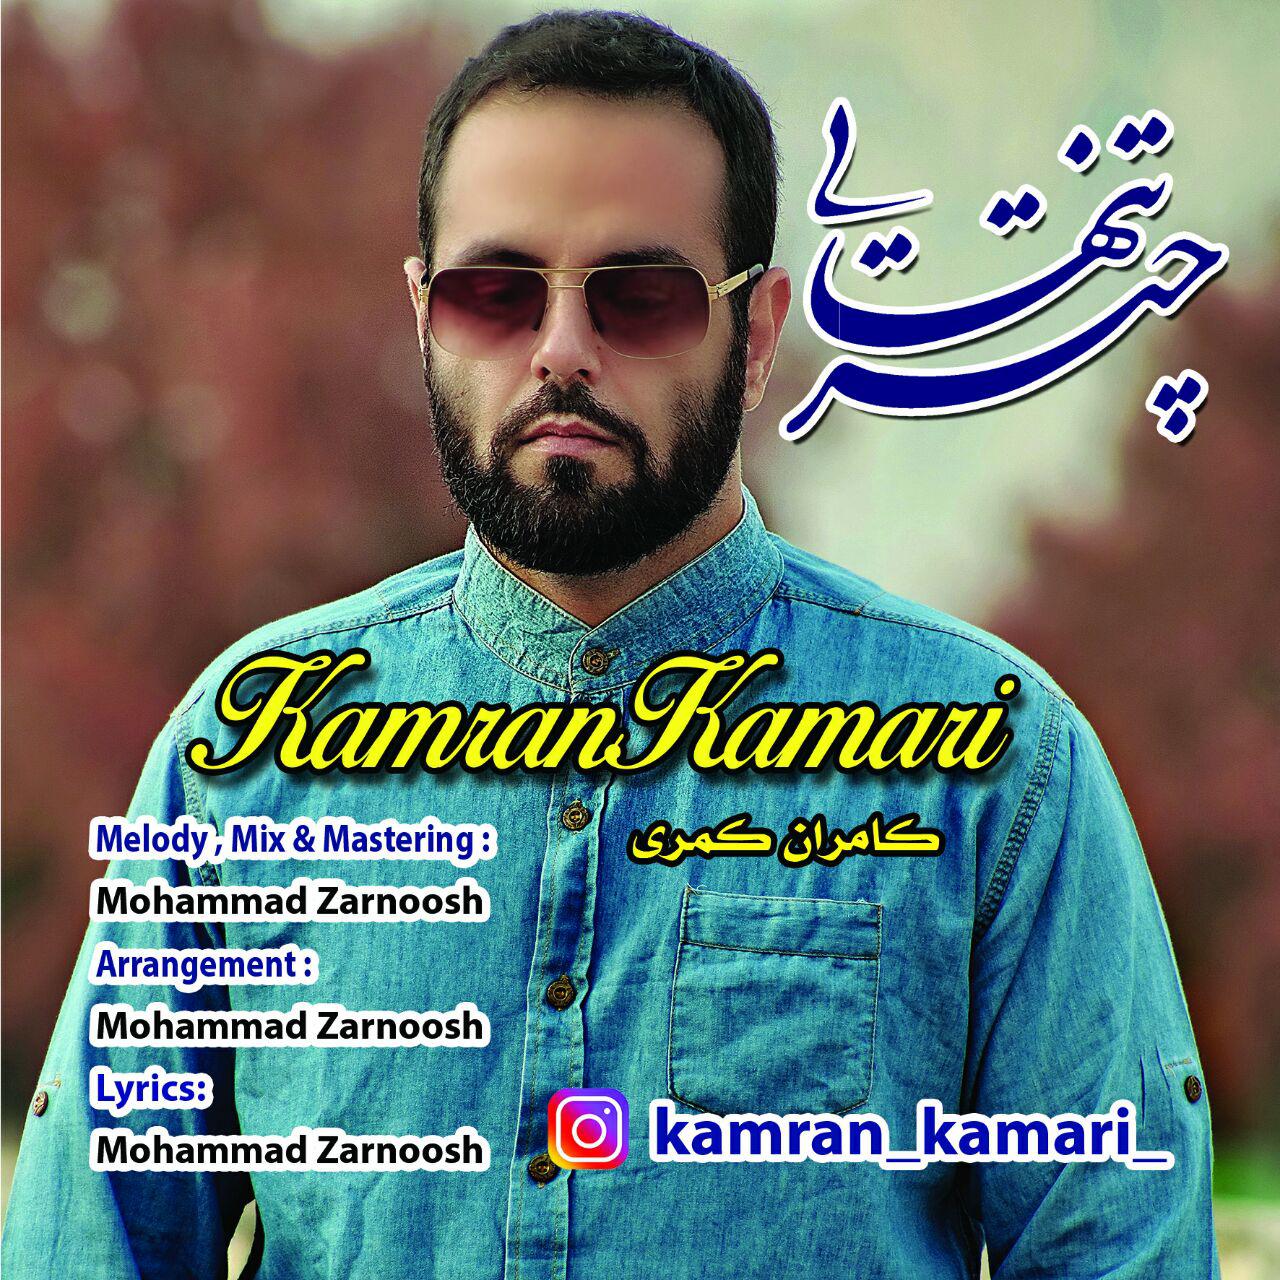  دانلود آهنگ جدید کامران کمری - چتر تنهایی | Download New Music By Kamran Kamari - Chatre Tanhaei